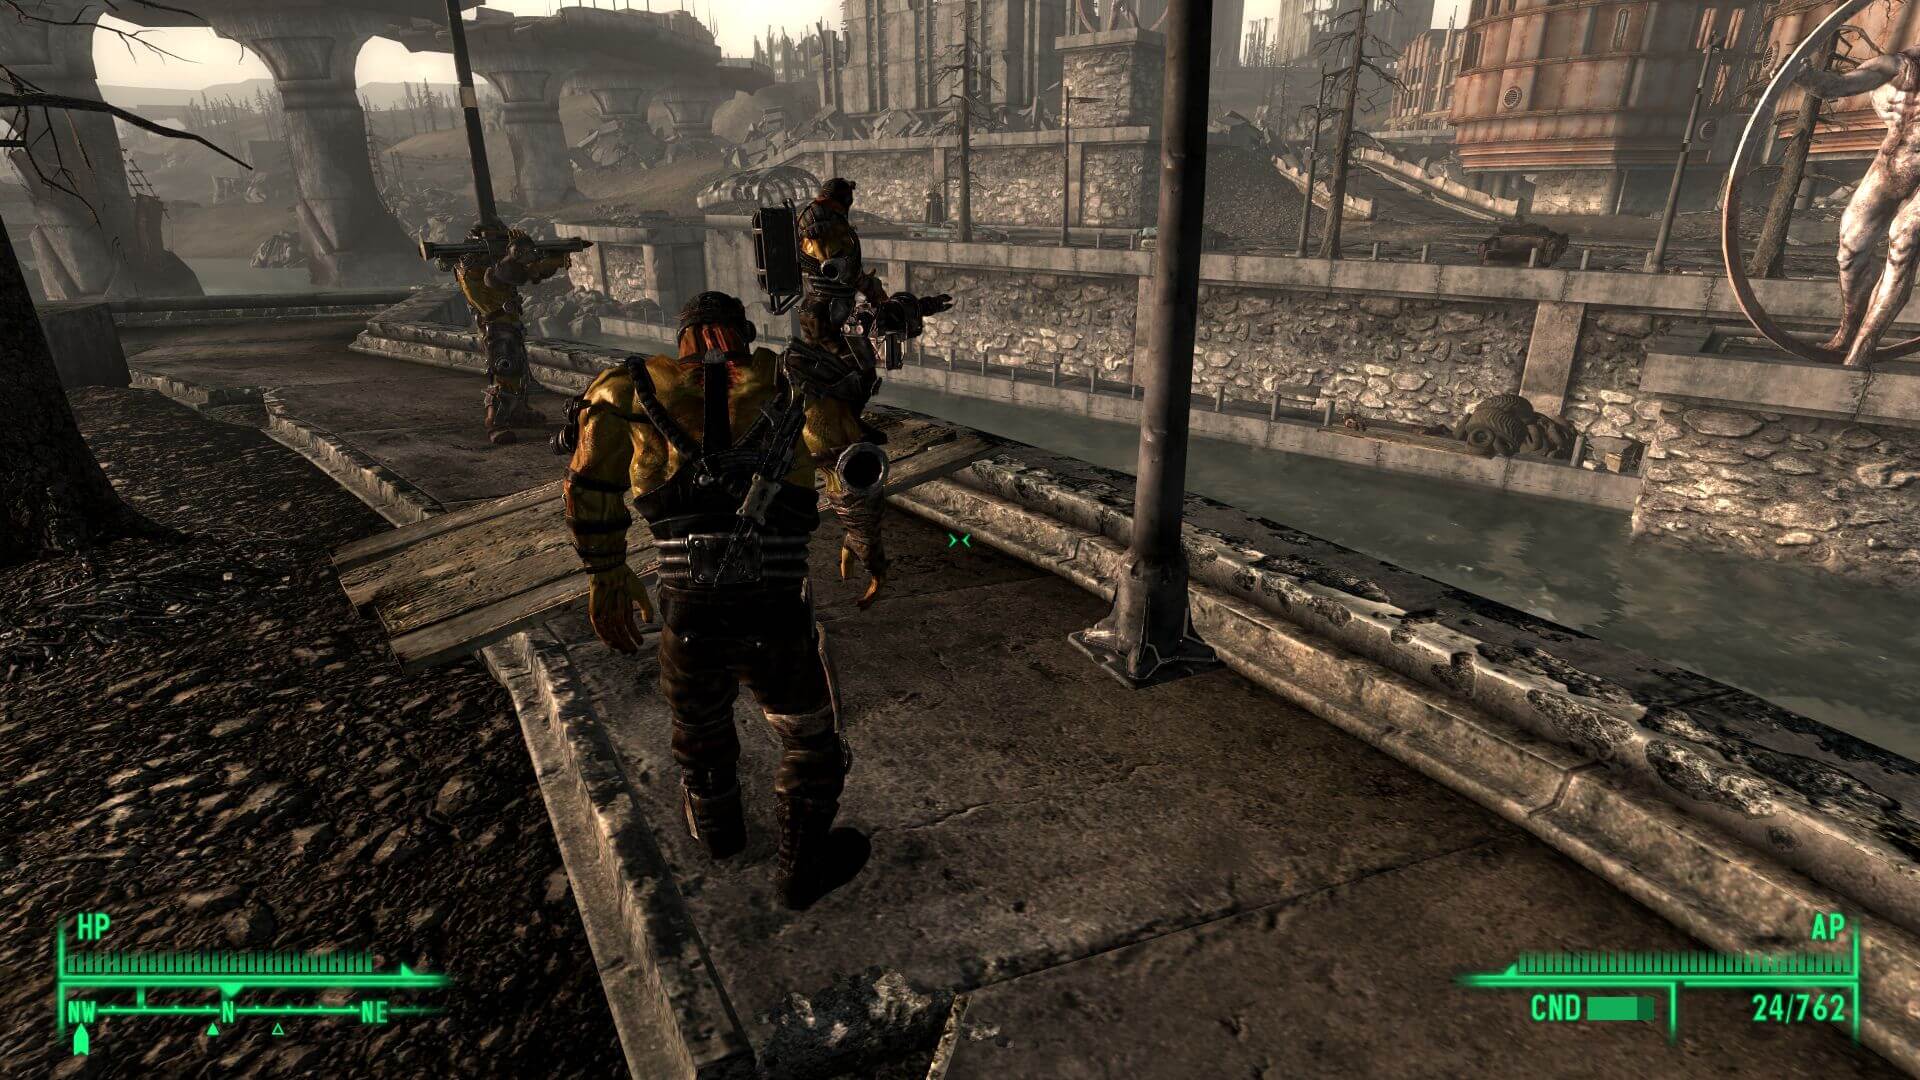 Мод для Fallout 3 позволяет стать супер-мутантом.